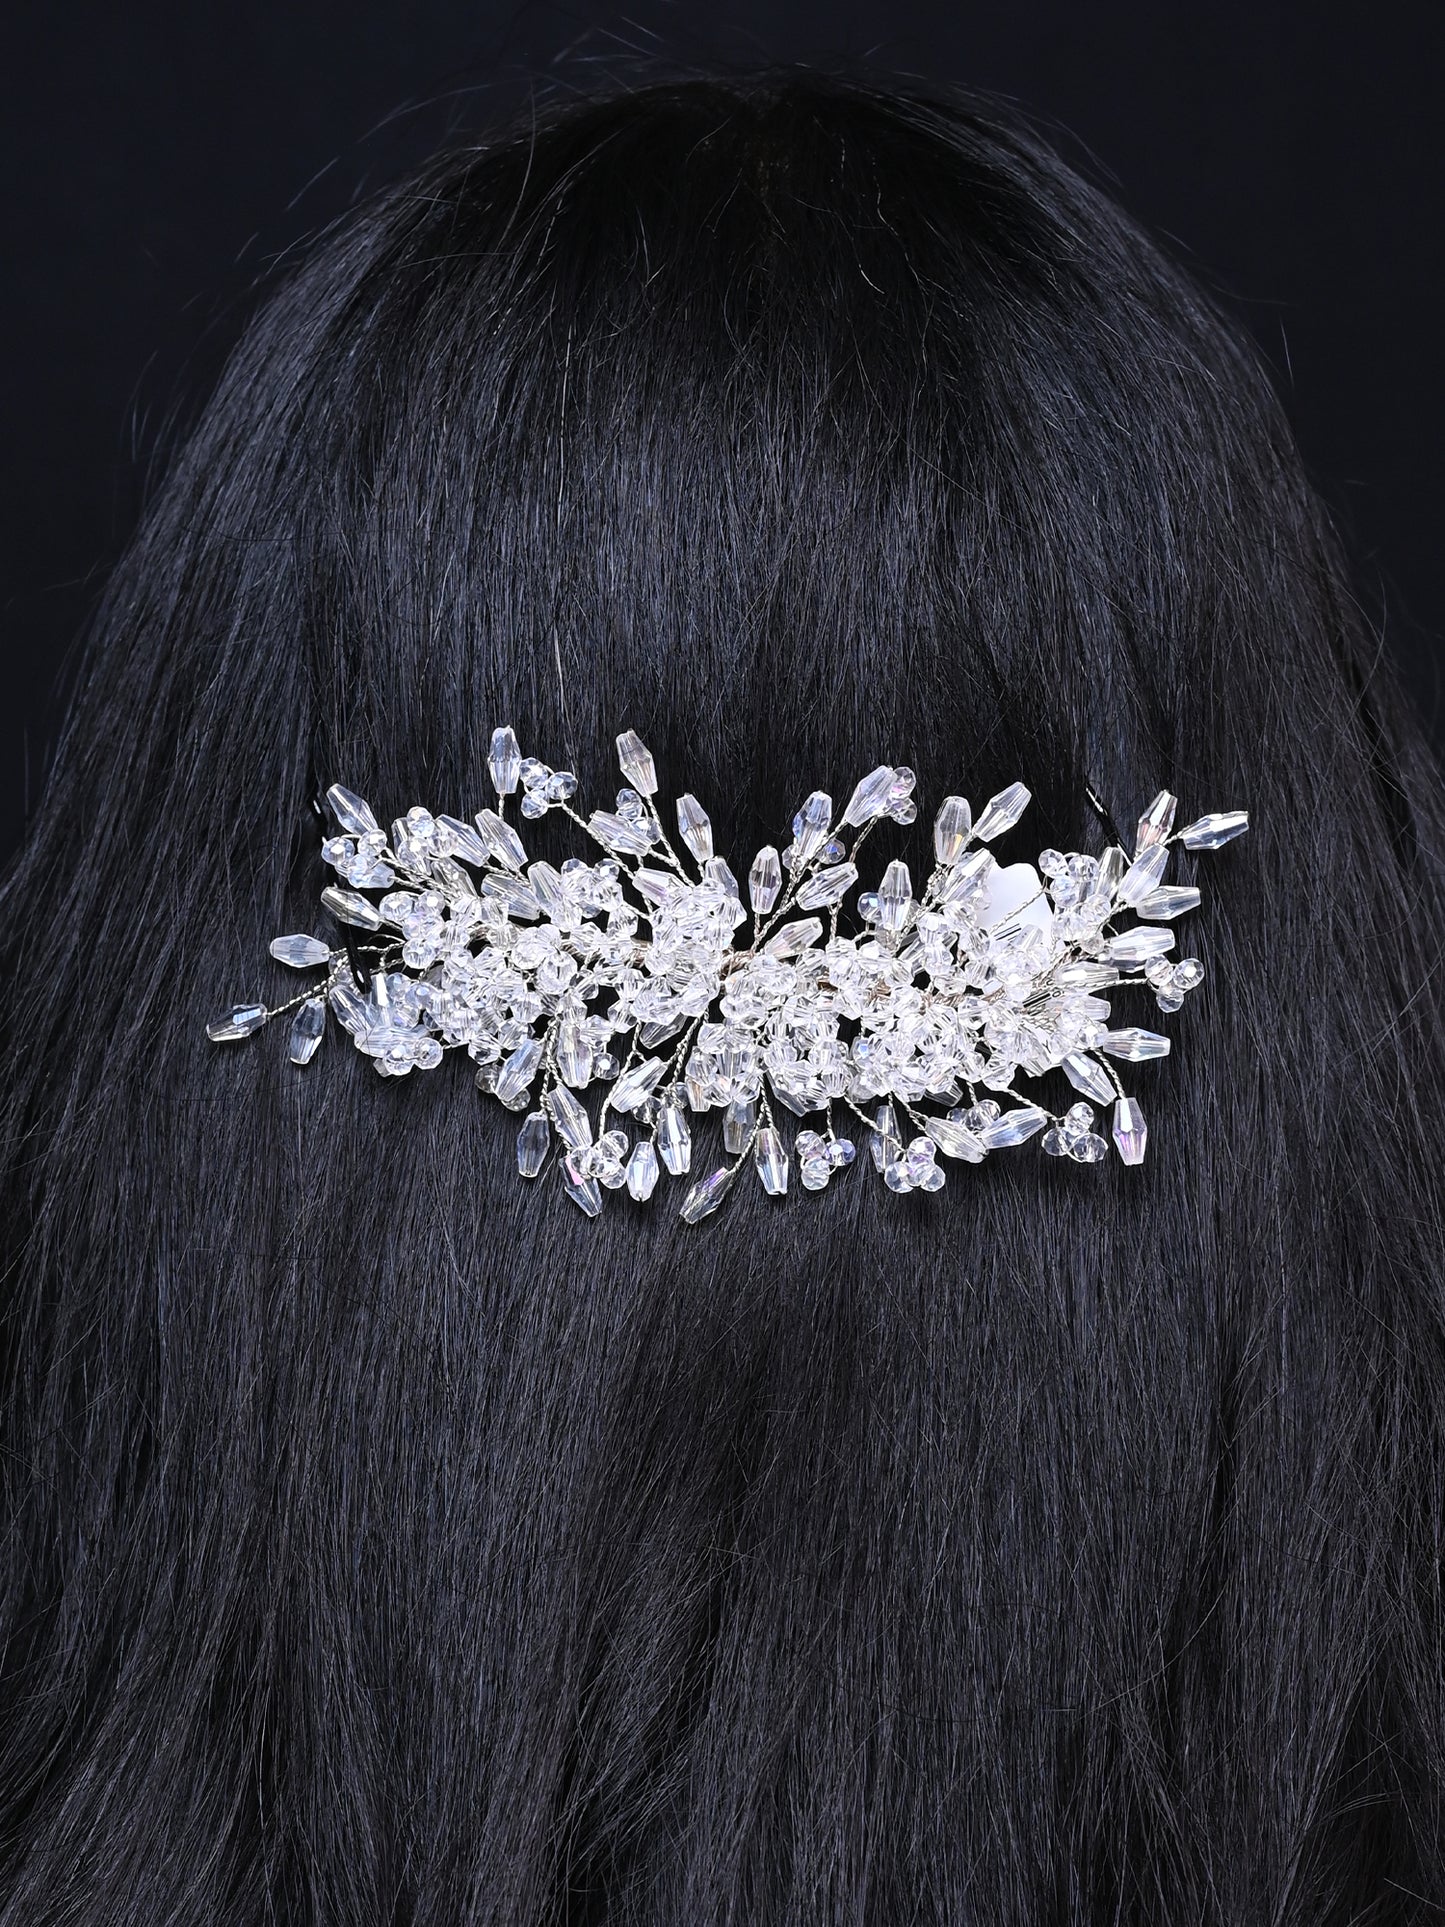 Sitara White Beads Hair Accessories